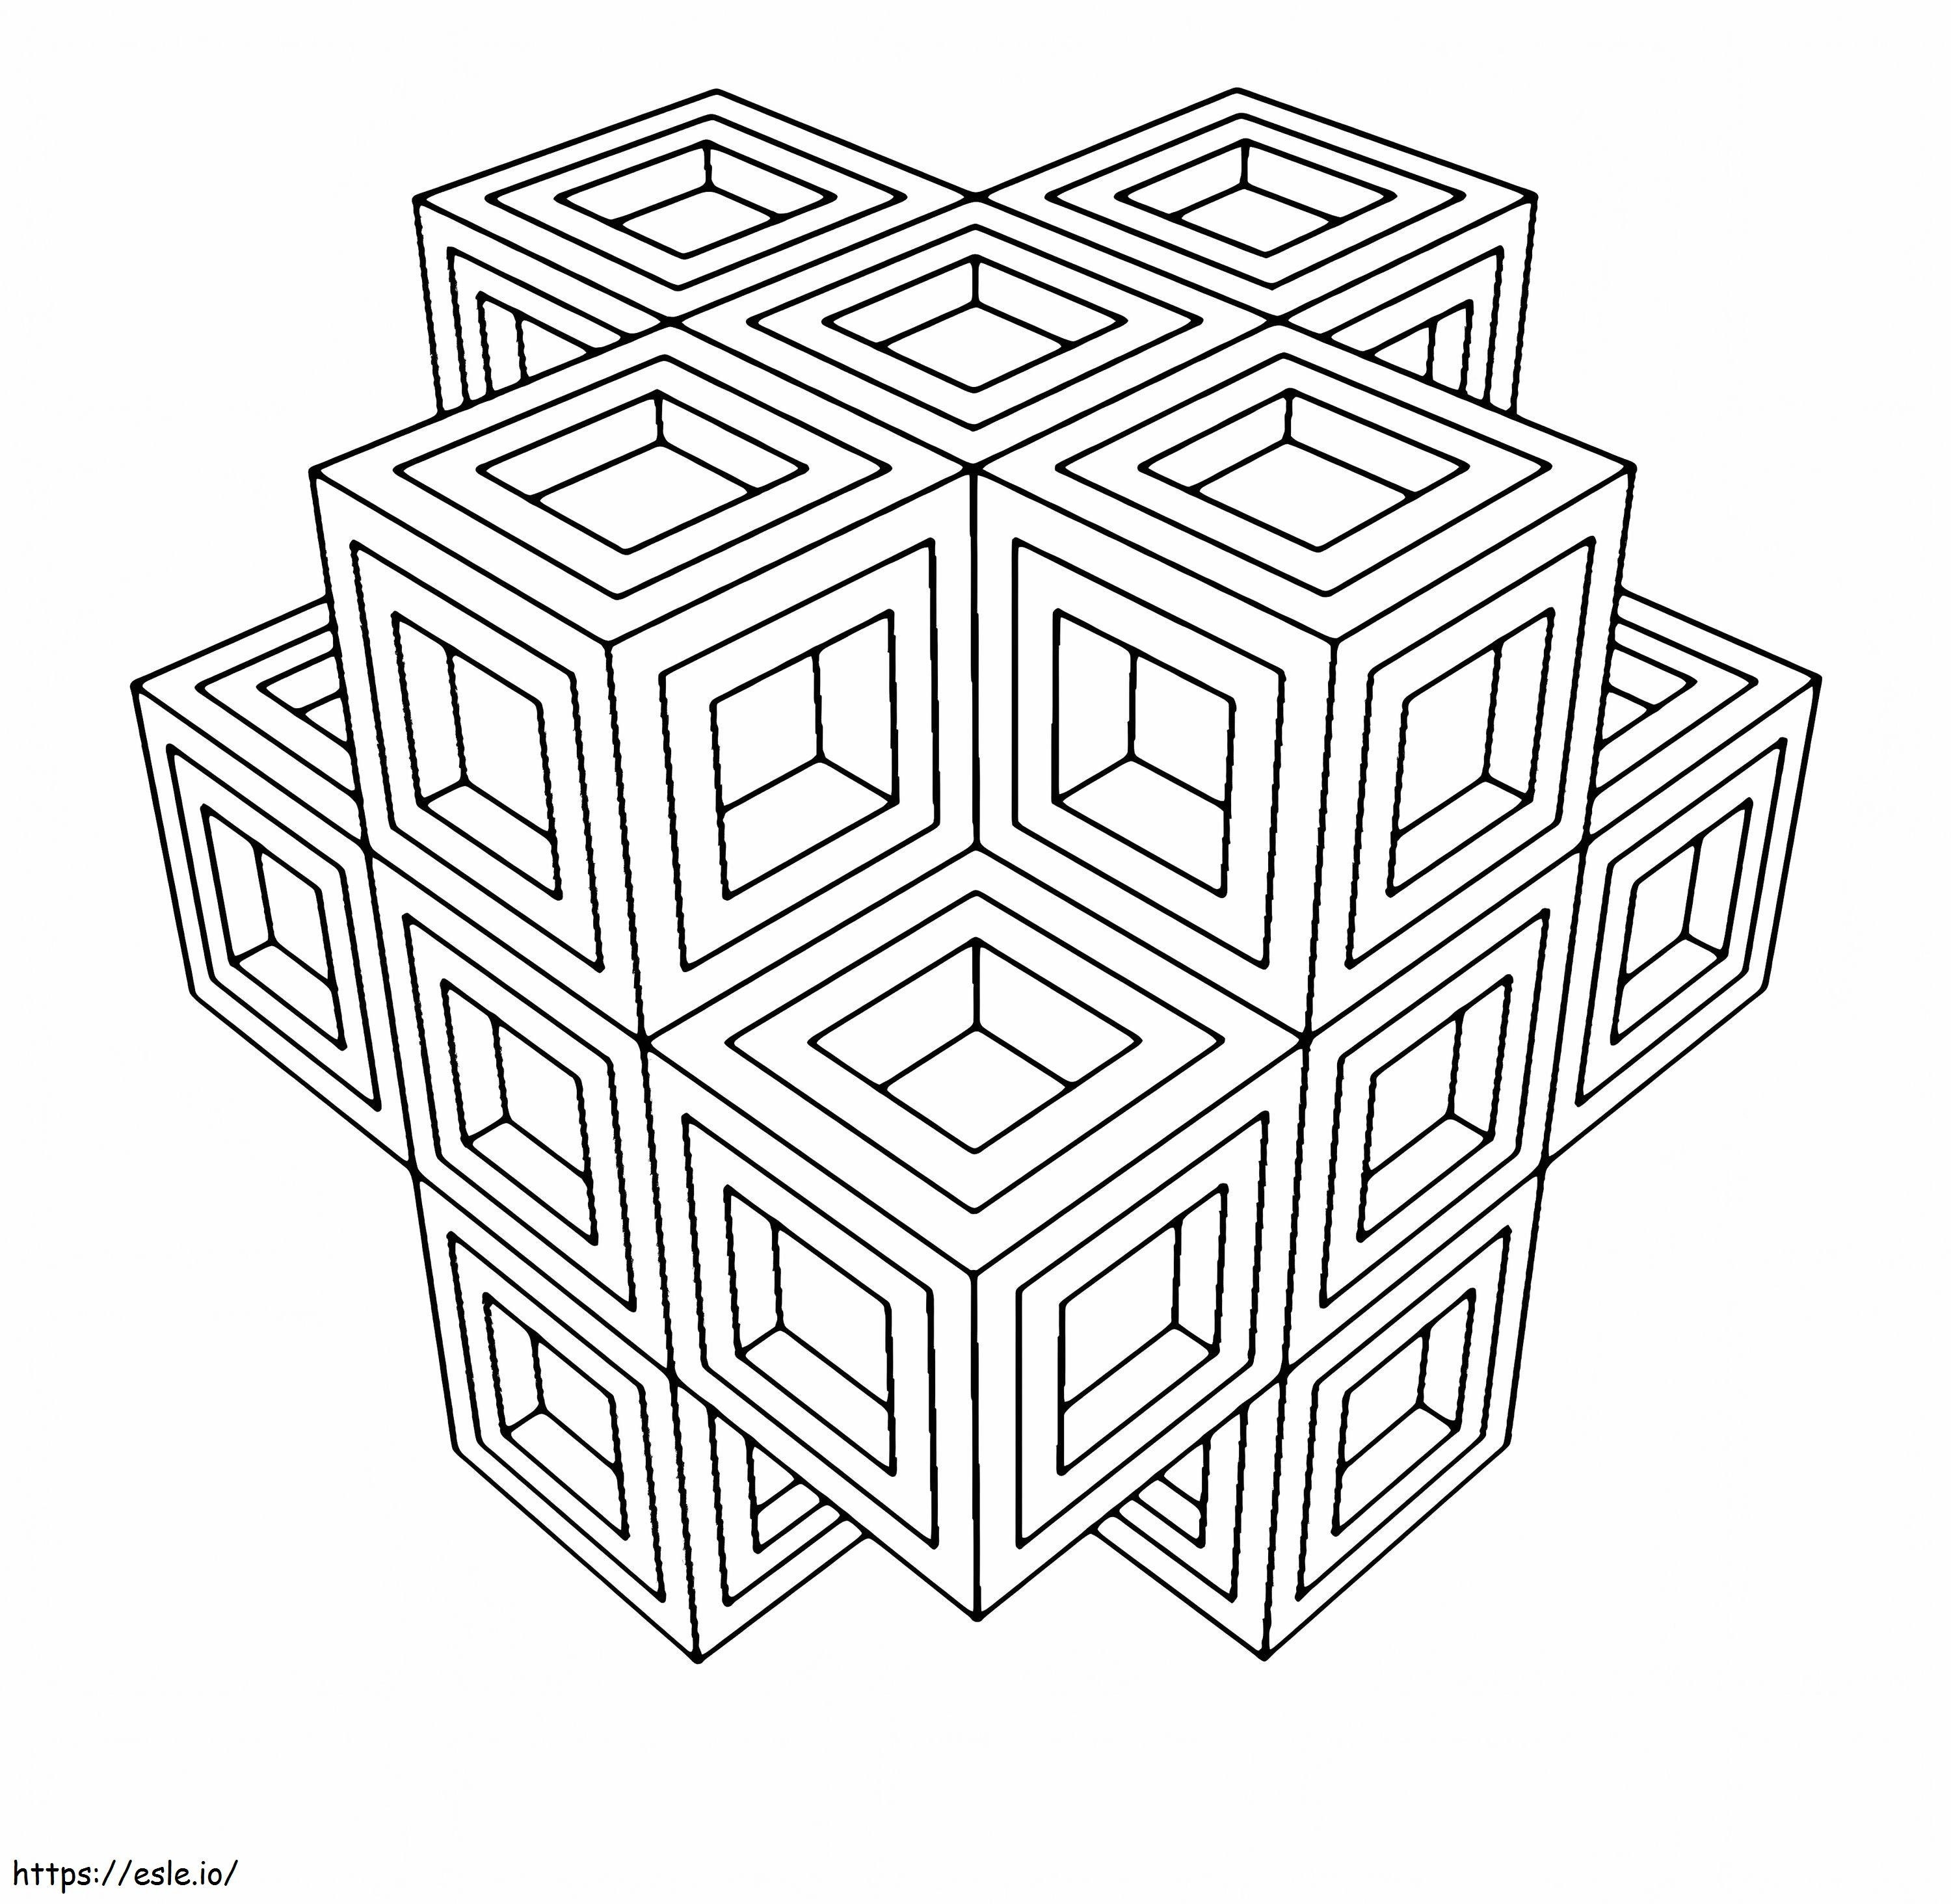 1572052593 115 1150771 Pyhä geometria aikuisten sivut Pinterest Geometric värityskuva